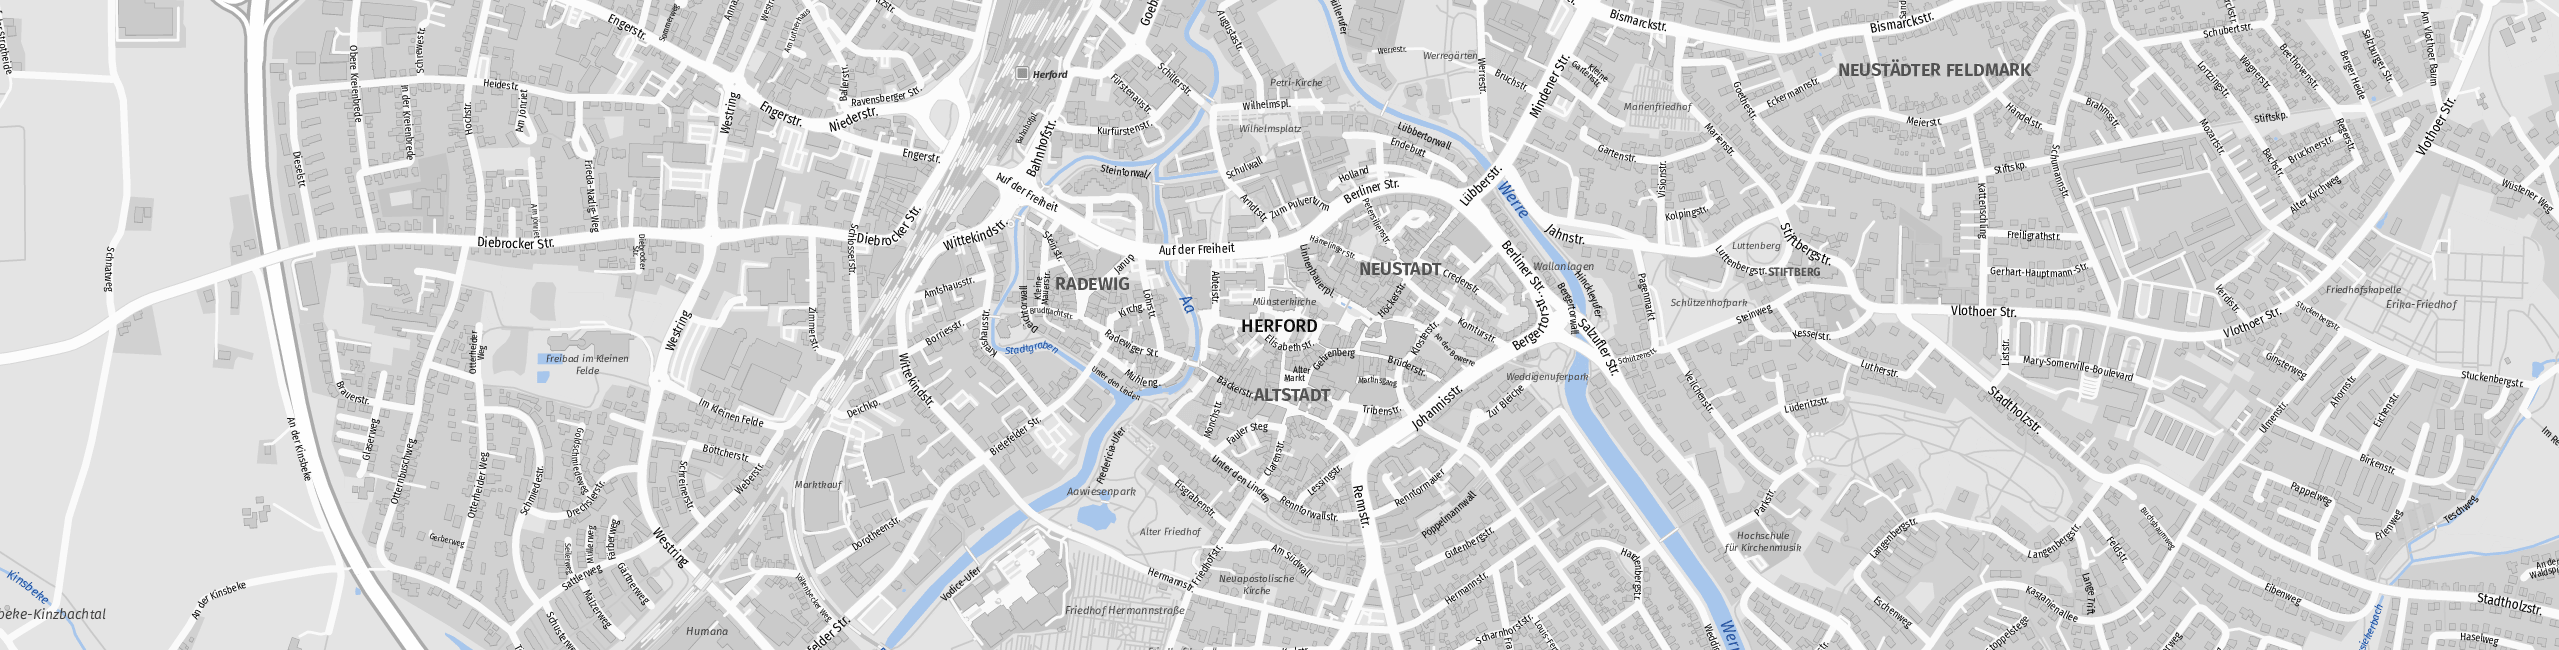 Stadtplan Herford zum Downloaden.